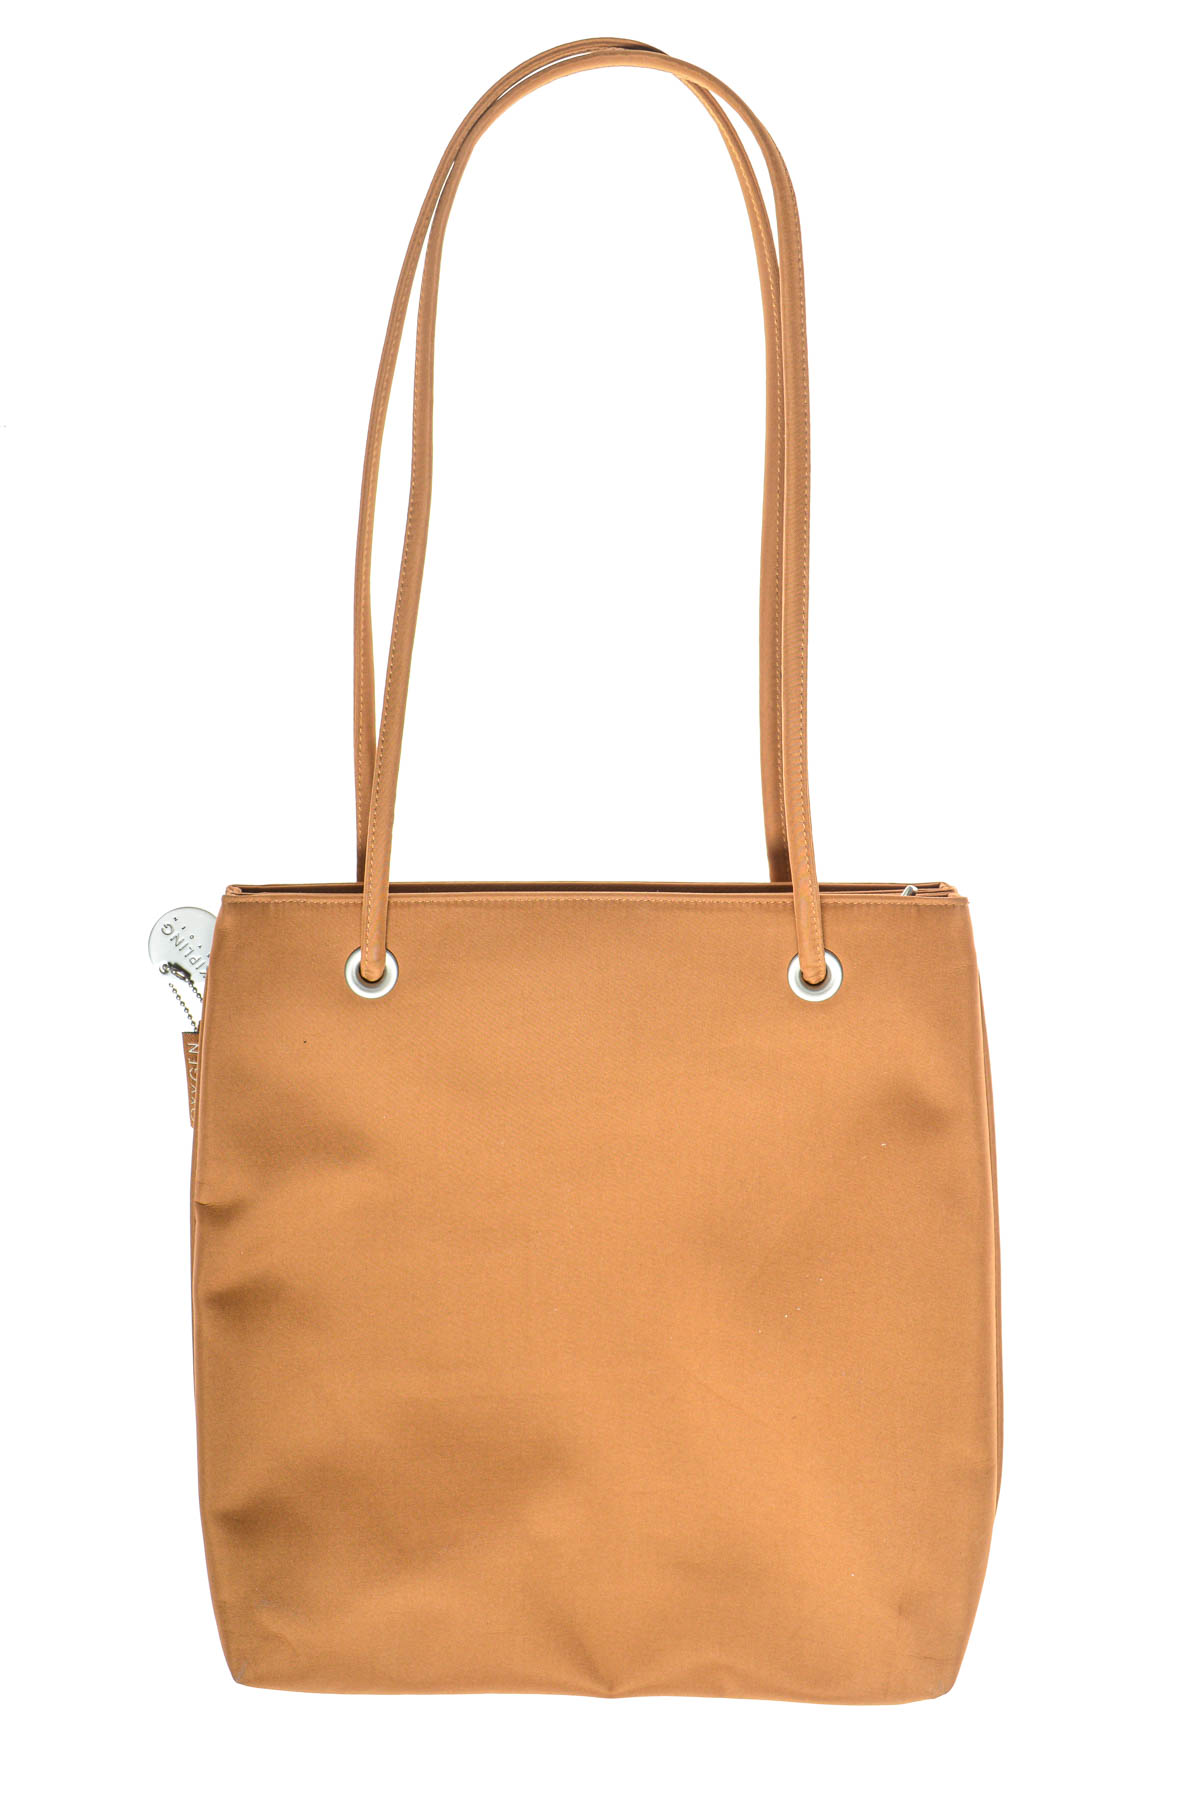 Women's bag - KIPLING - 1